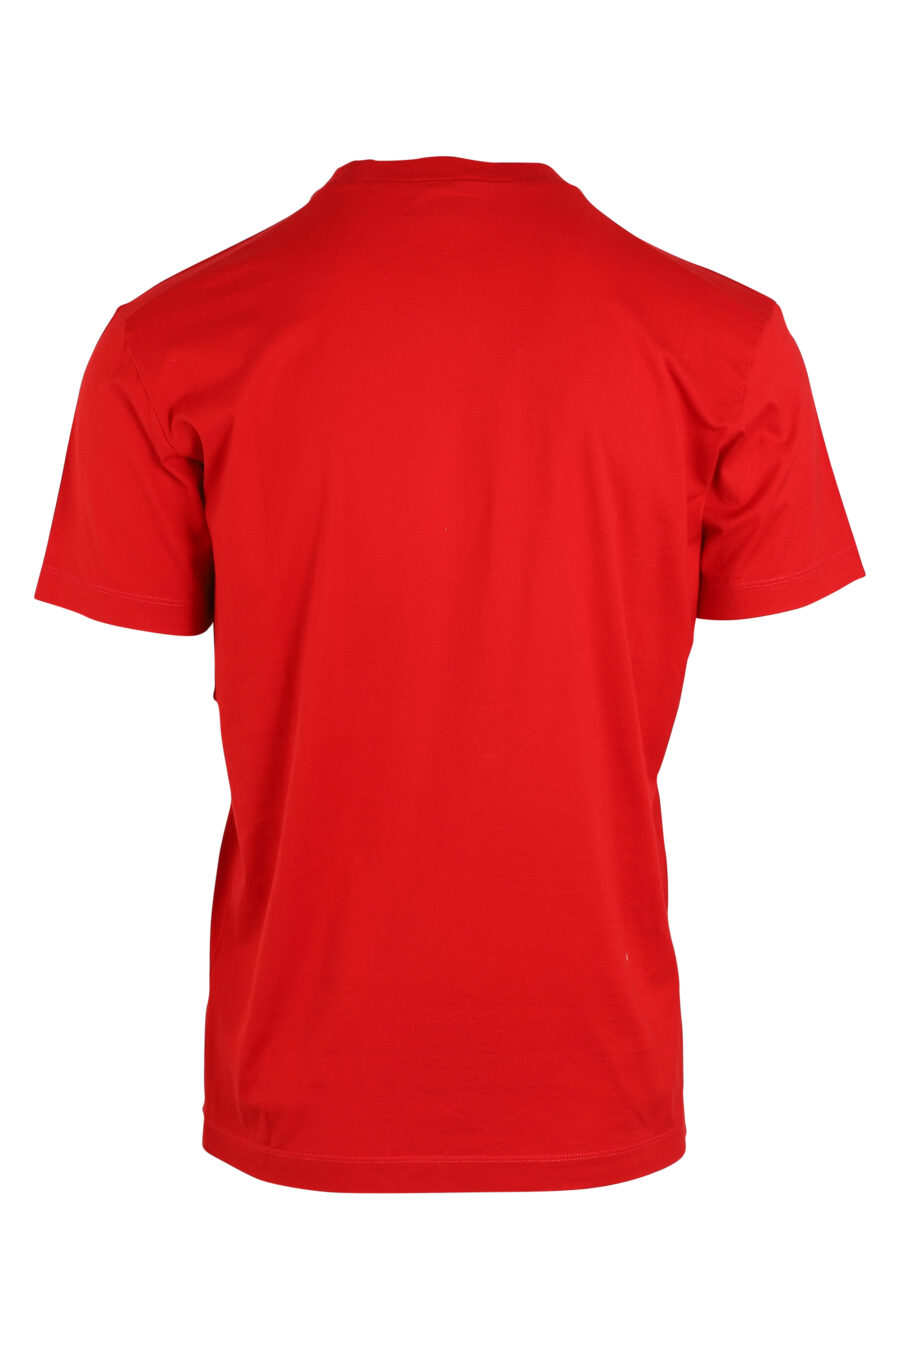 Camiseta roja con doble logo "icon" - IMG 0641